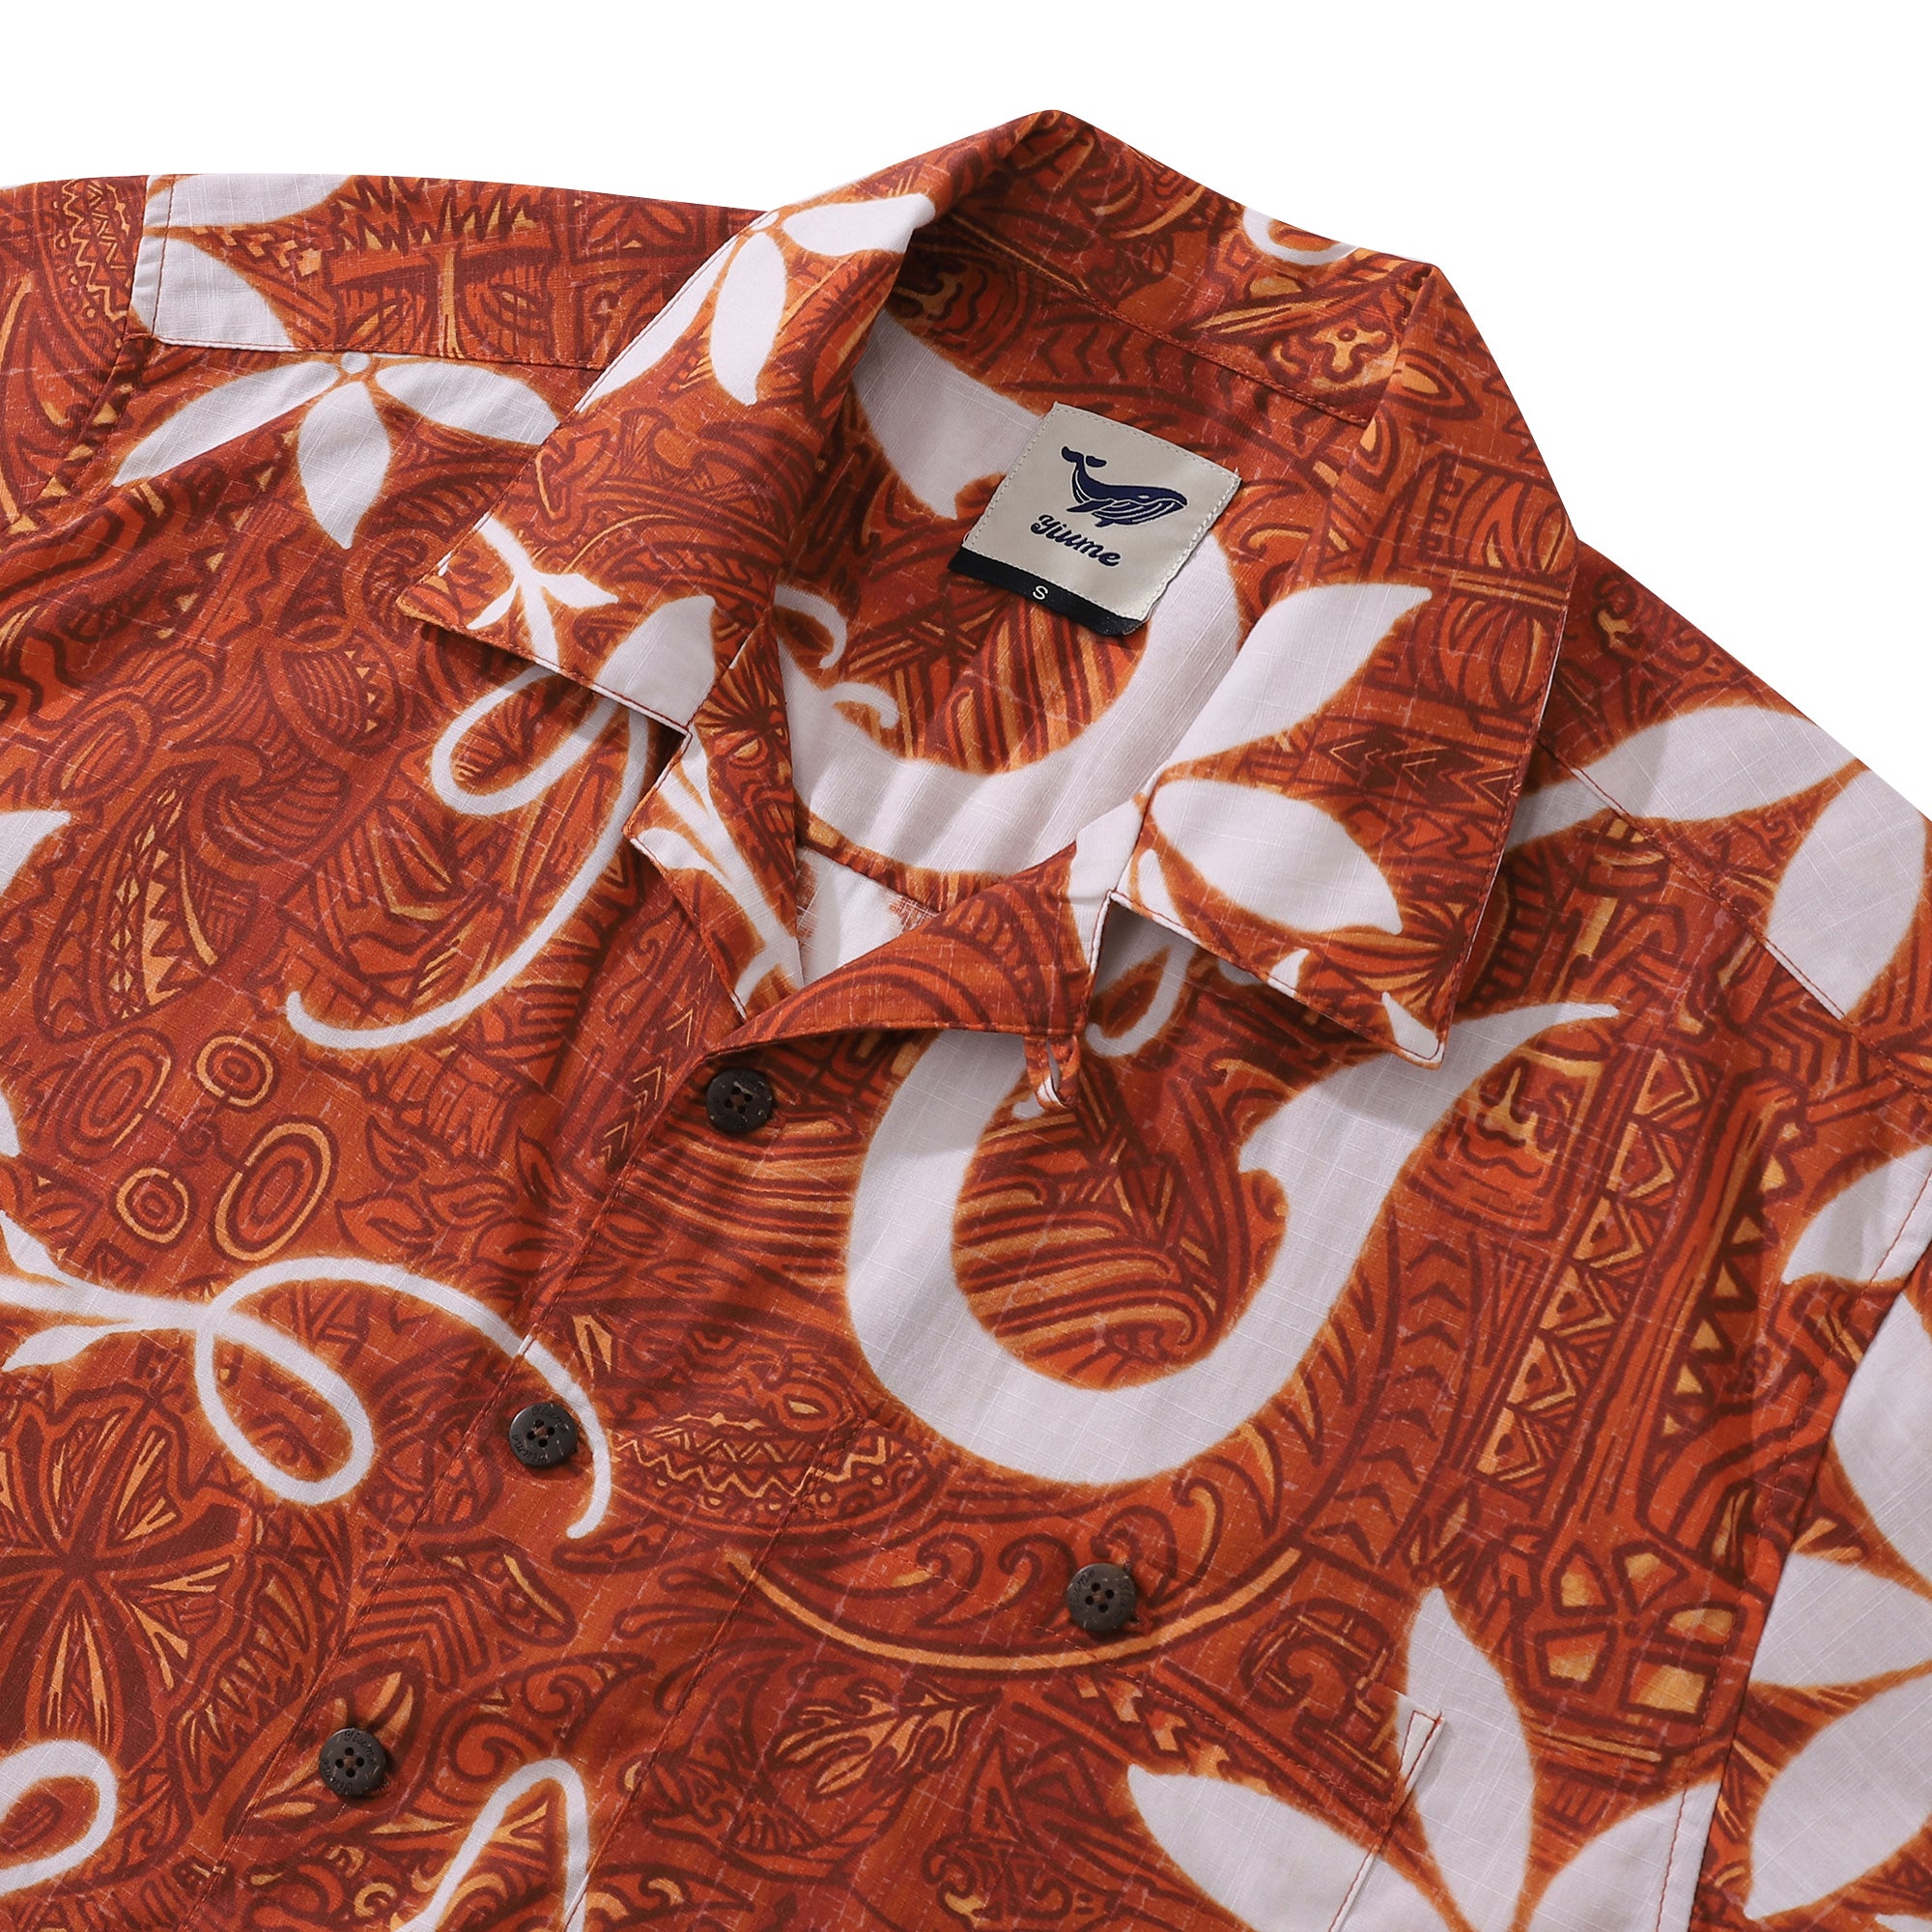 Red Hawaiian Shirt For Men Tiki Hawaii Shirt Camp Collar 100% Cotton Shirt